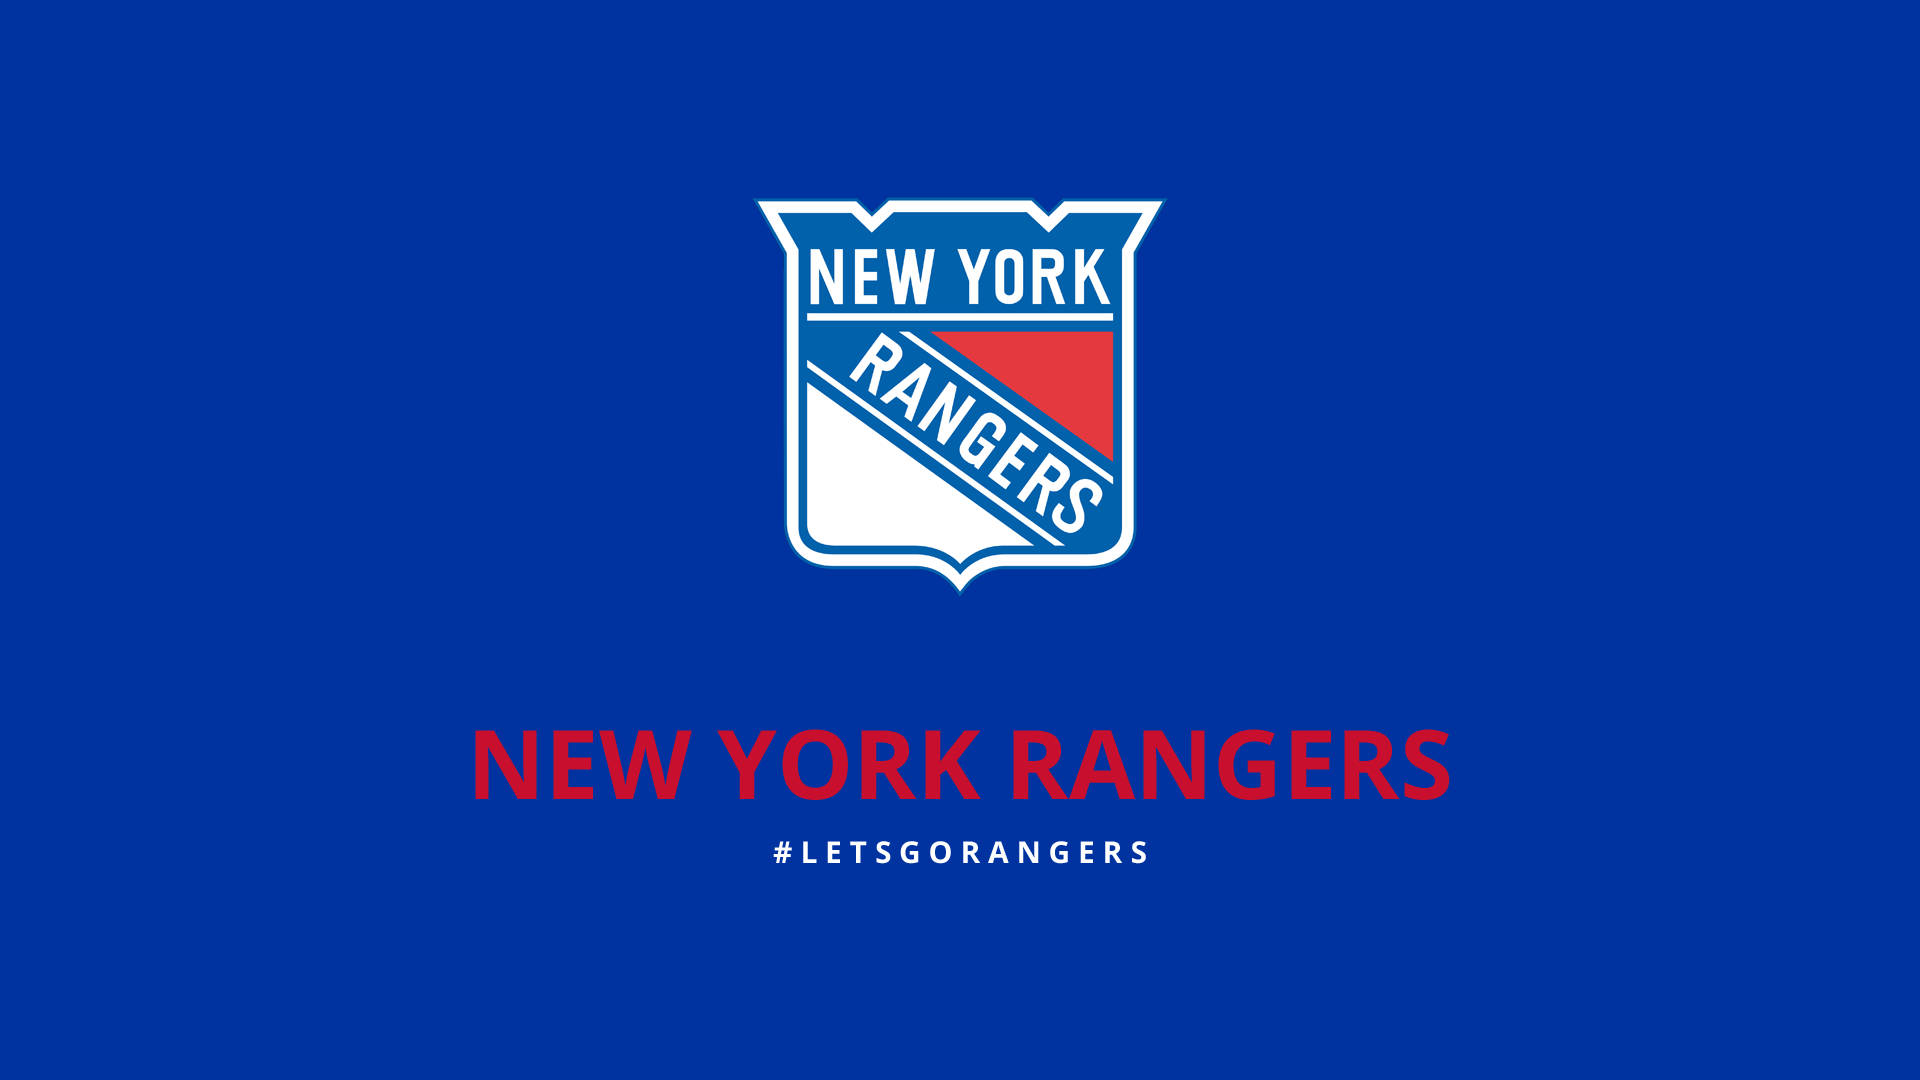 Basic New York Rangers Poster Background